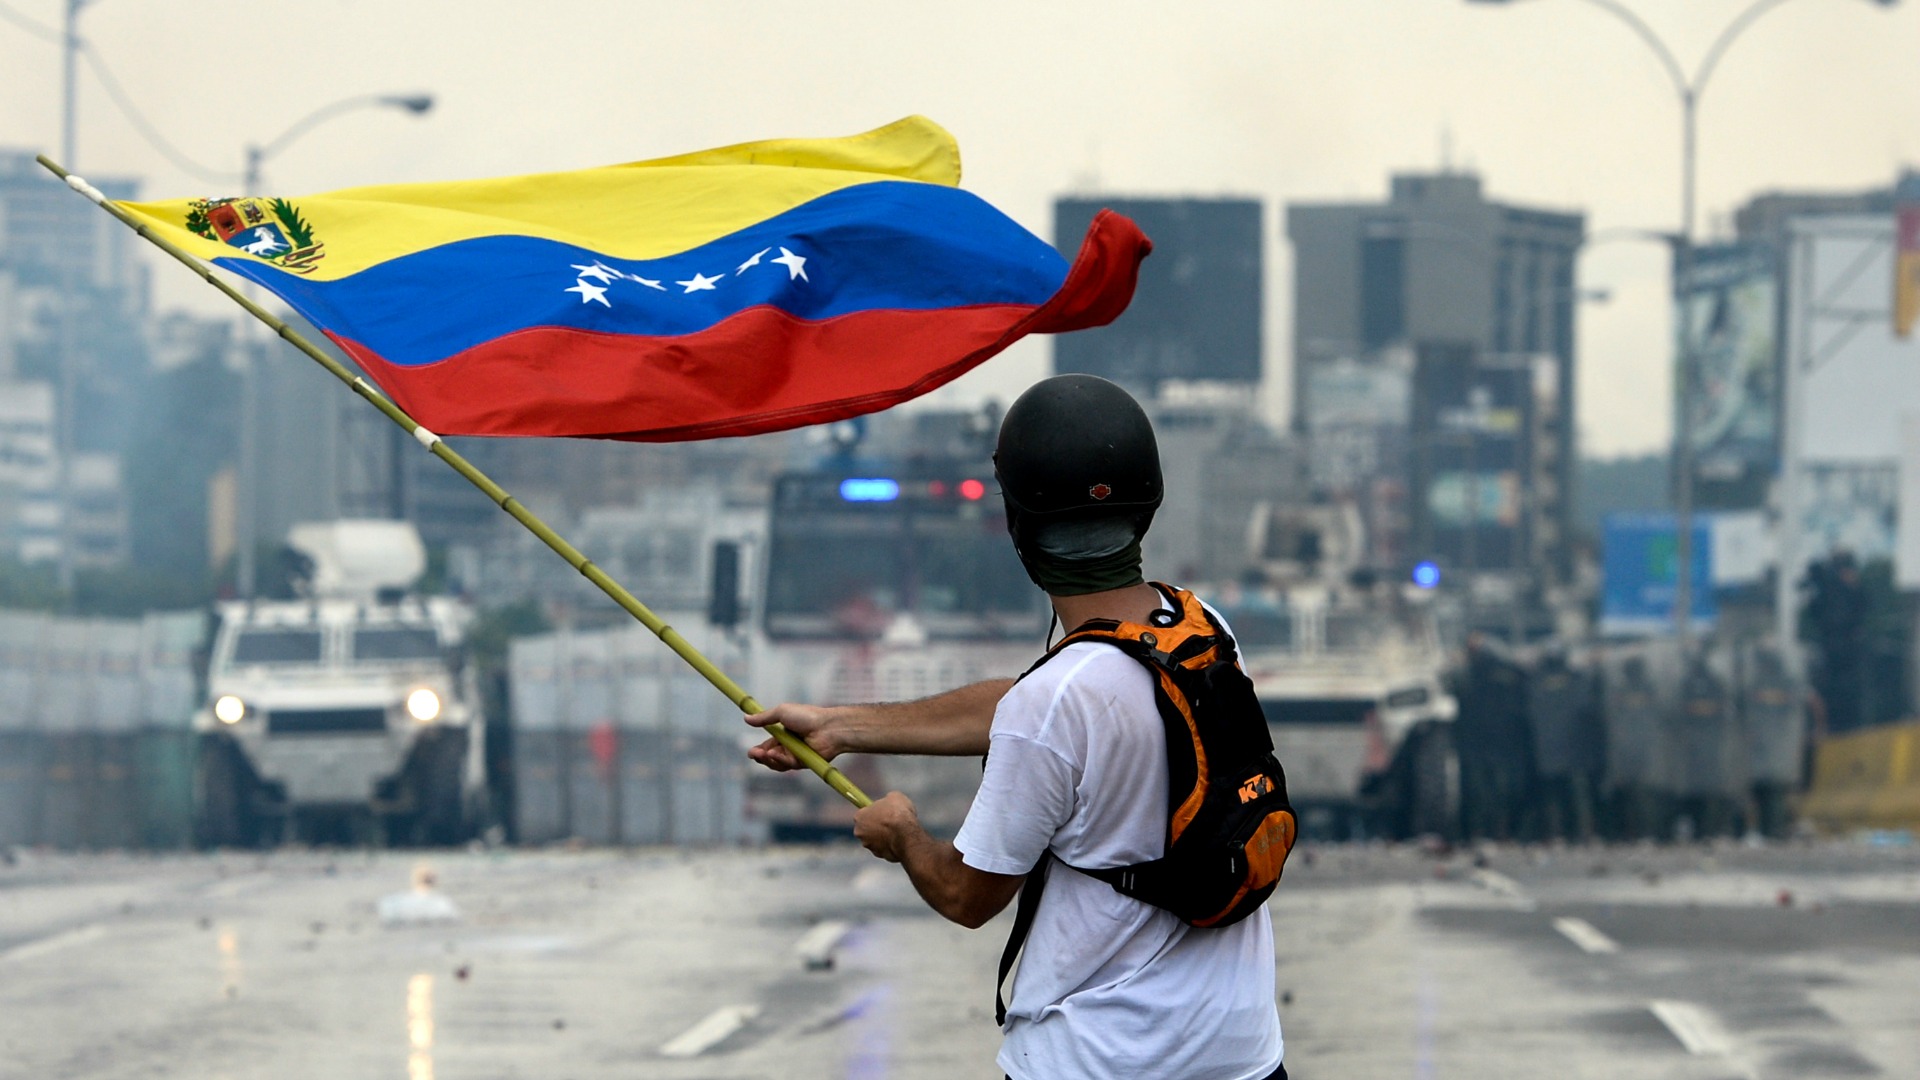 La UE pide a Venezuela investigar los incidentes violentos y liberar a los opositores